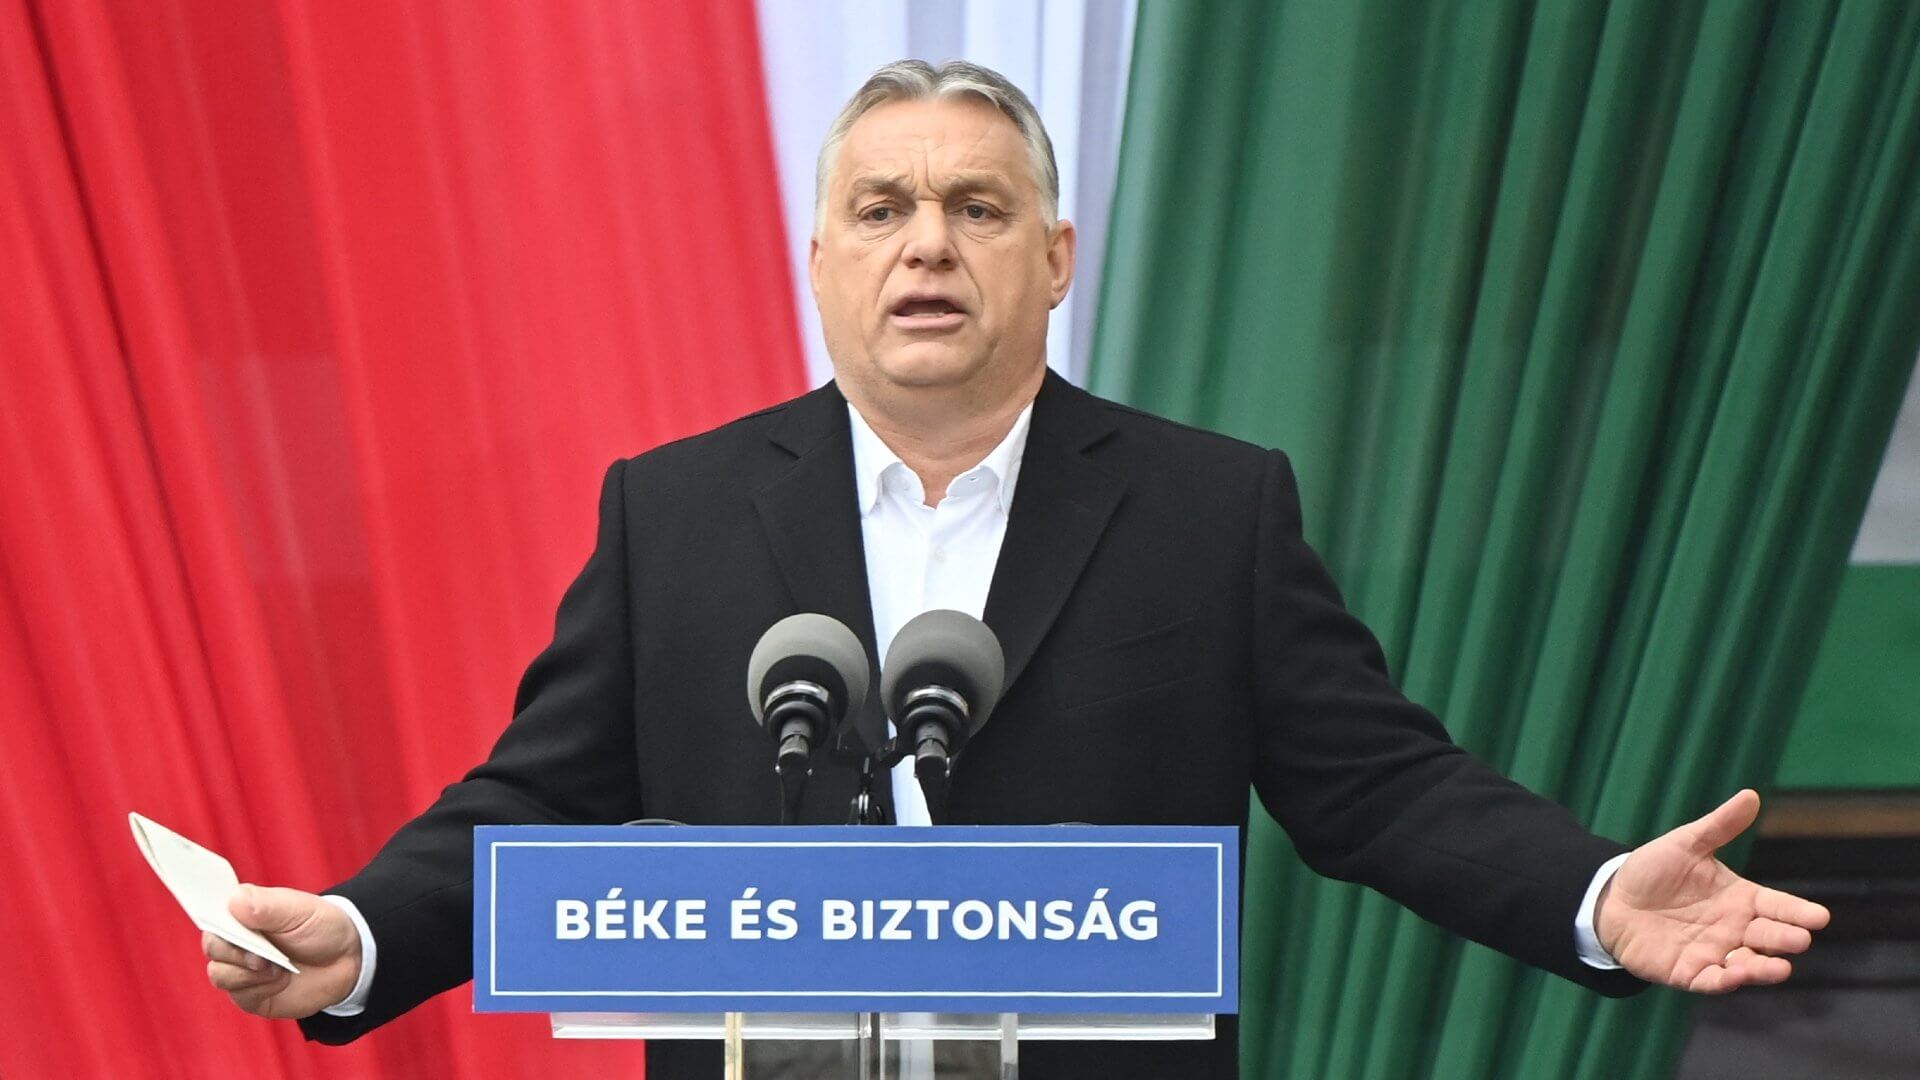 Віктор Орбан – «політична тварина», якій подобається дратувати ЄС, - Süddeutsche Zeitung